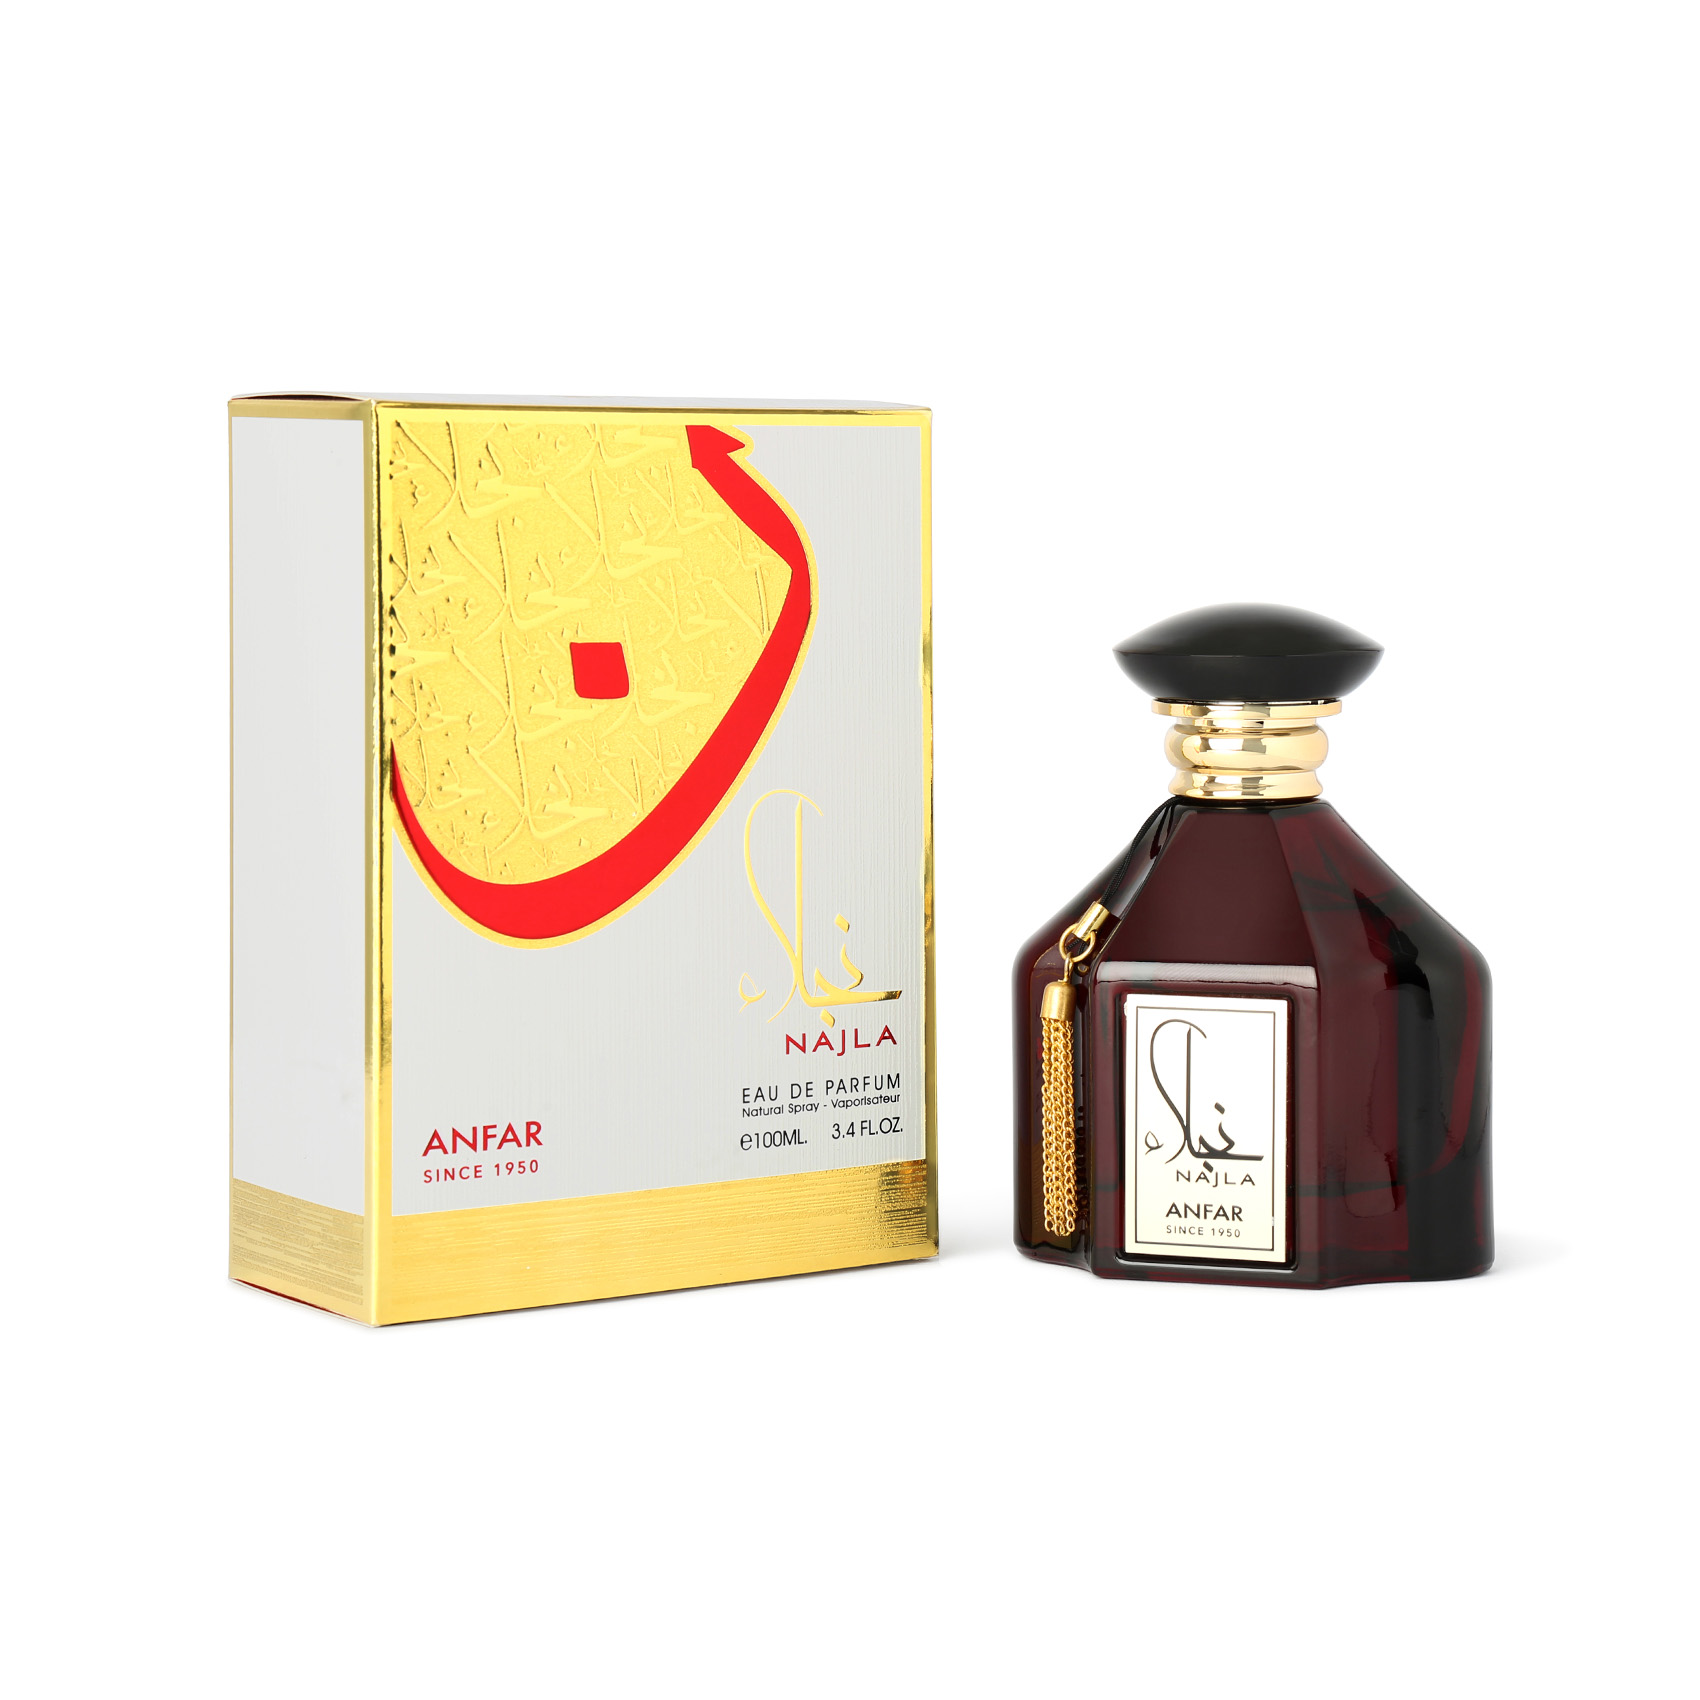 Najla Edp 100 ml Perfume For Men & Women By Anfar